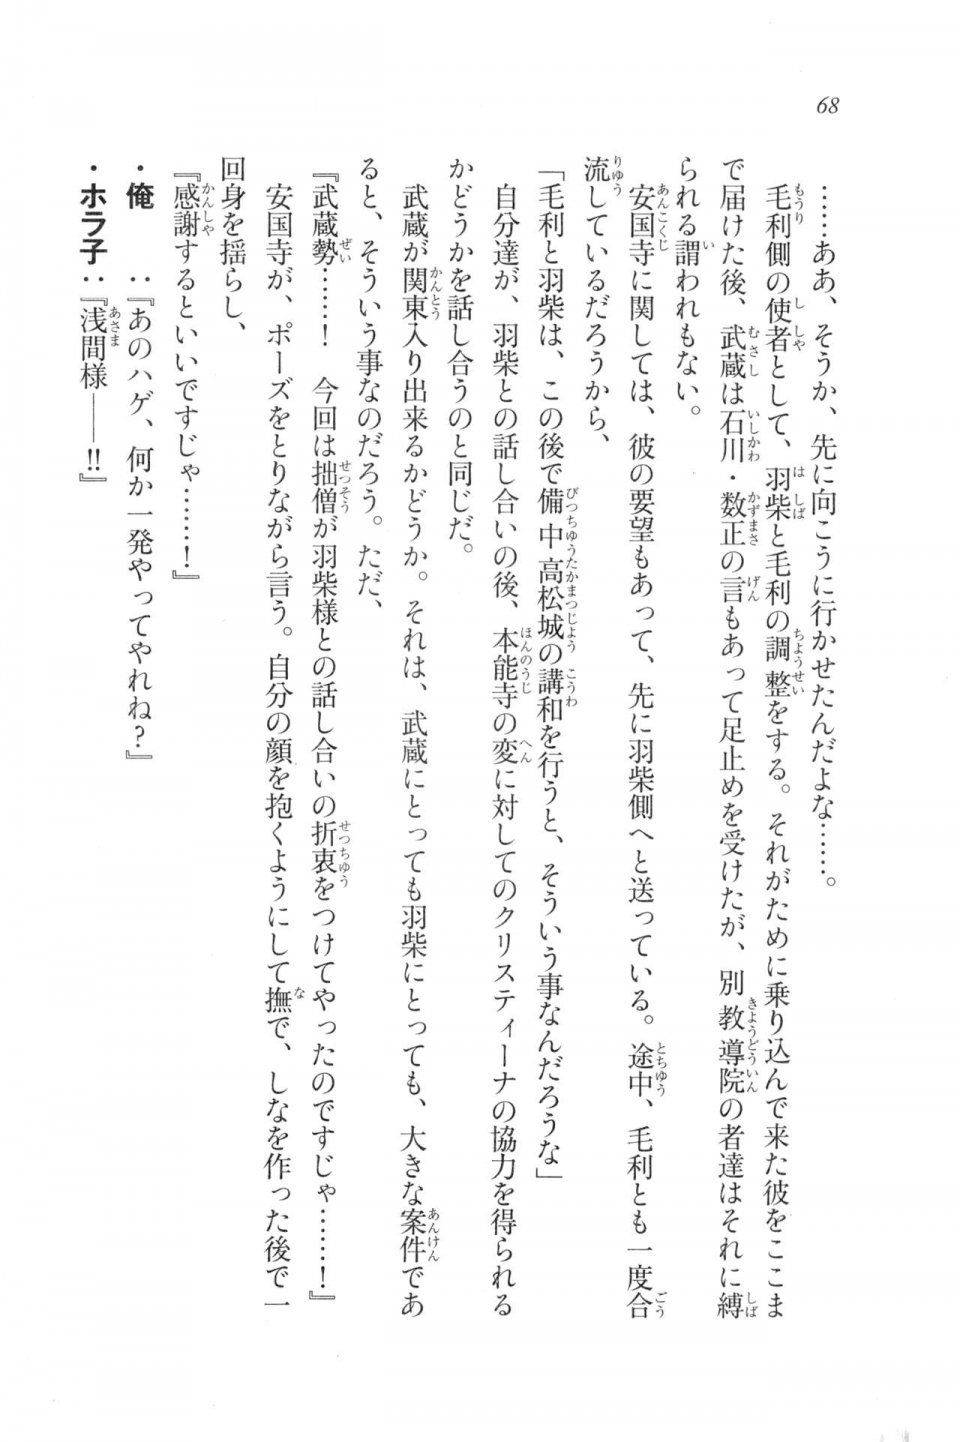 Kyoukai Senjou no Horizon LN Vol 20(8B) - Photo #68